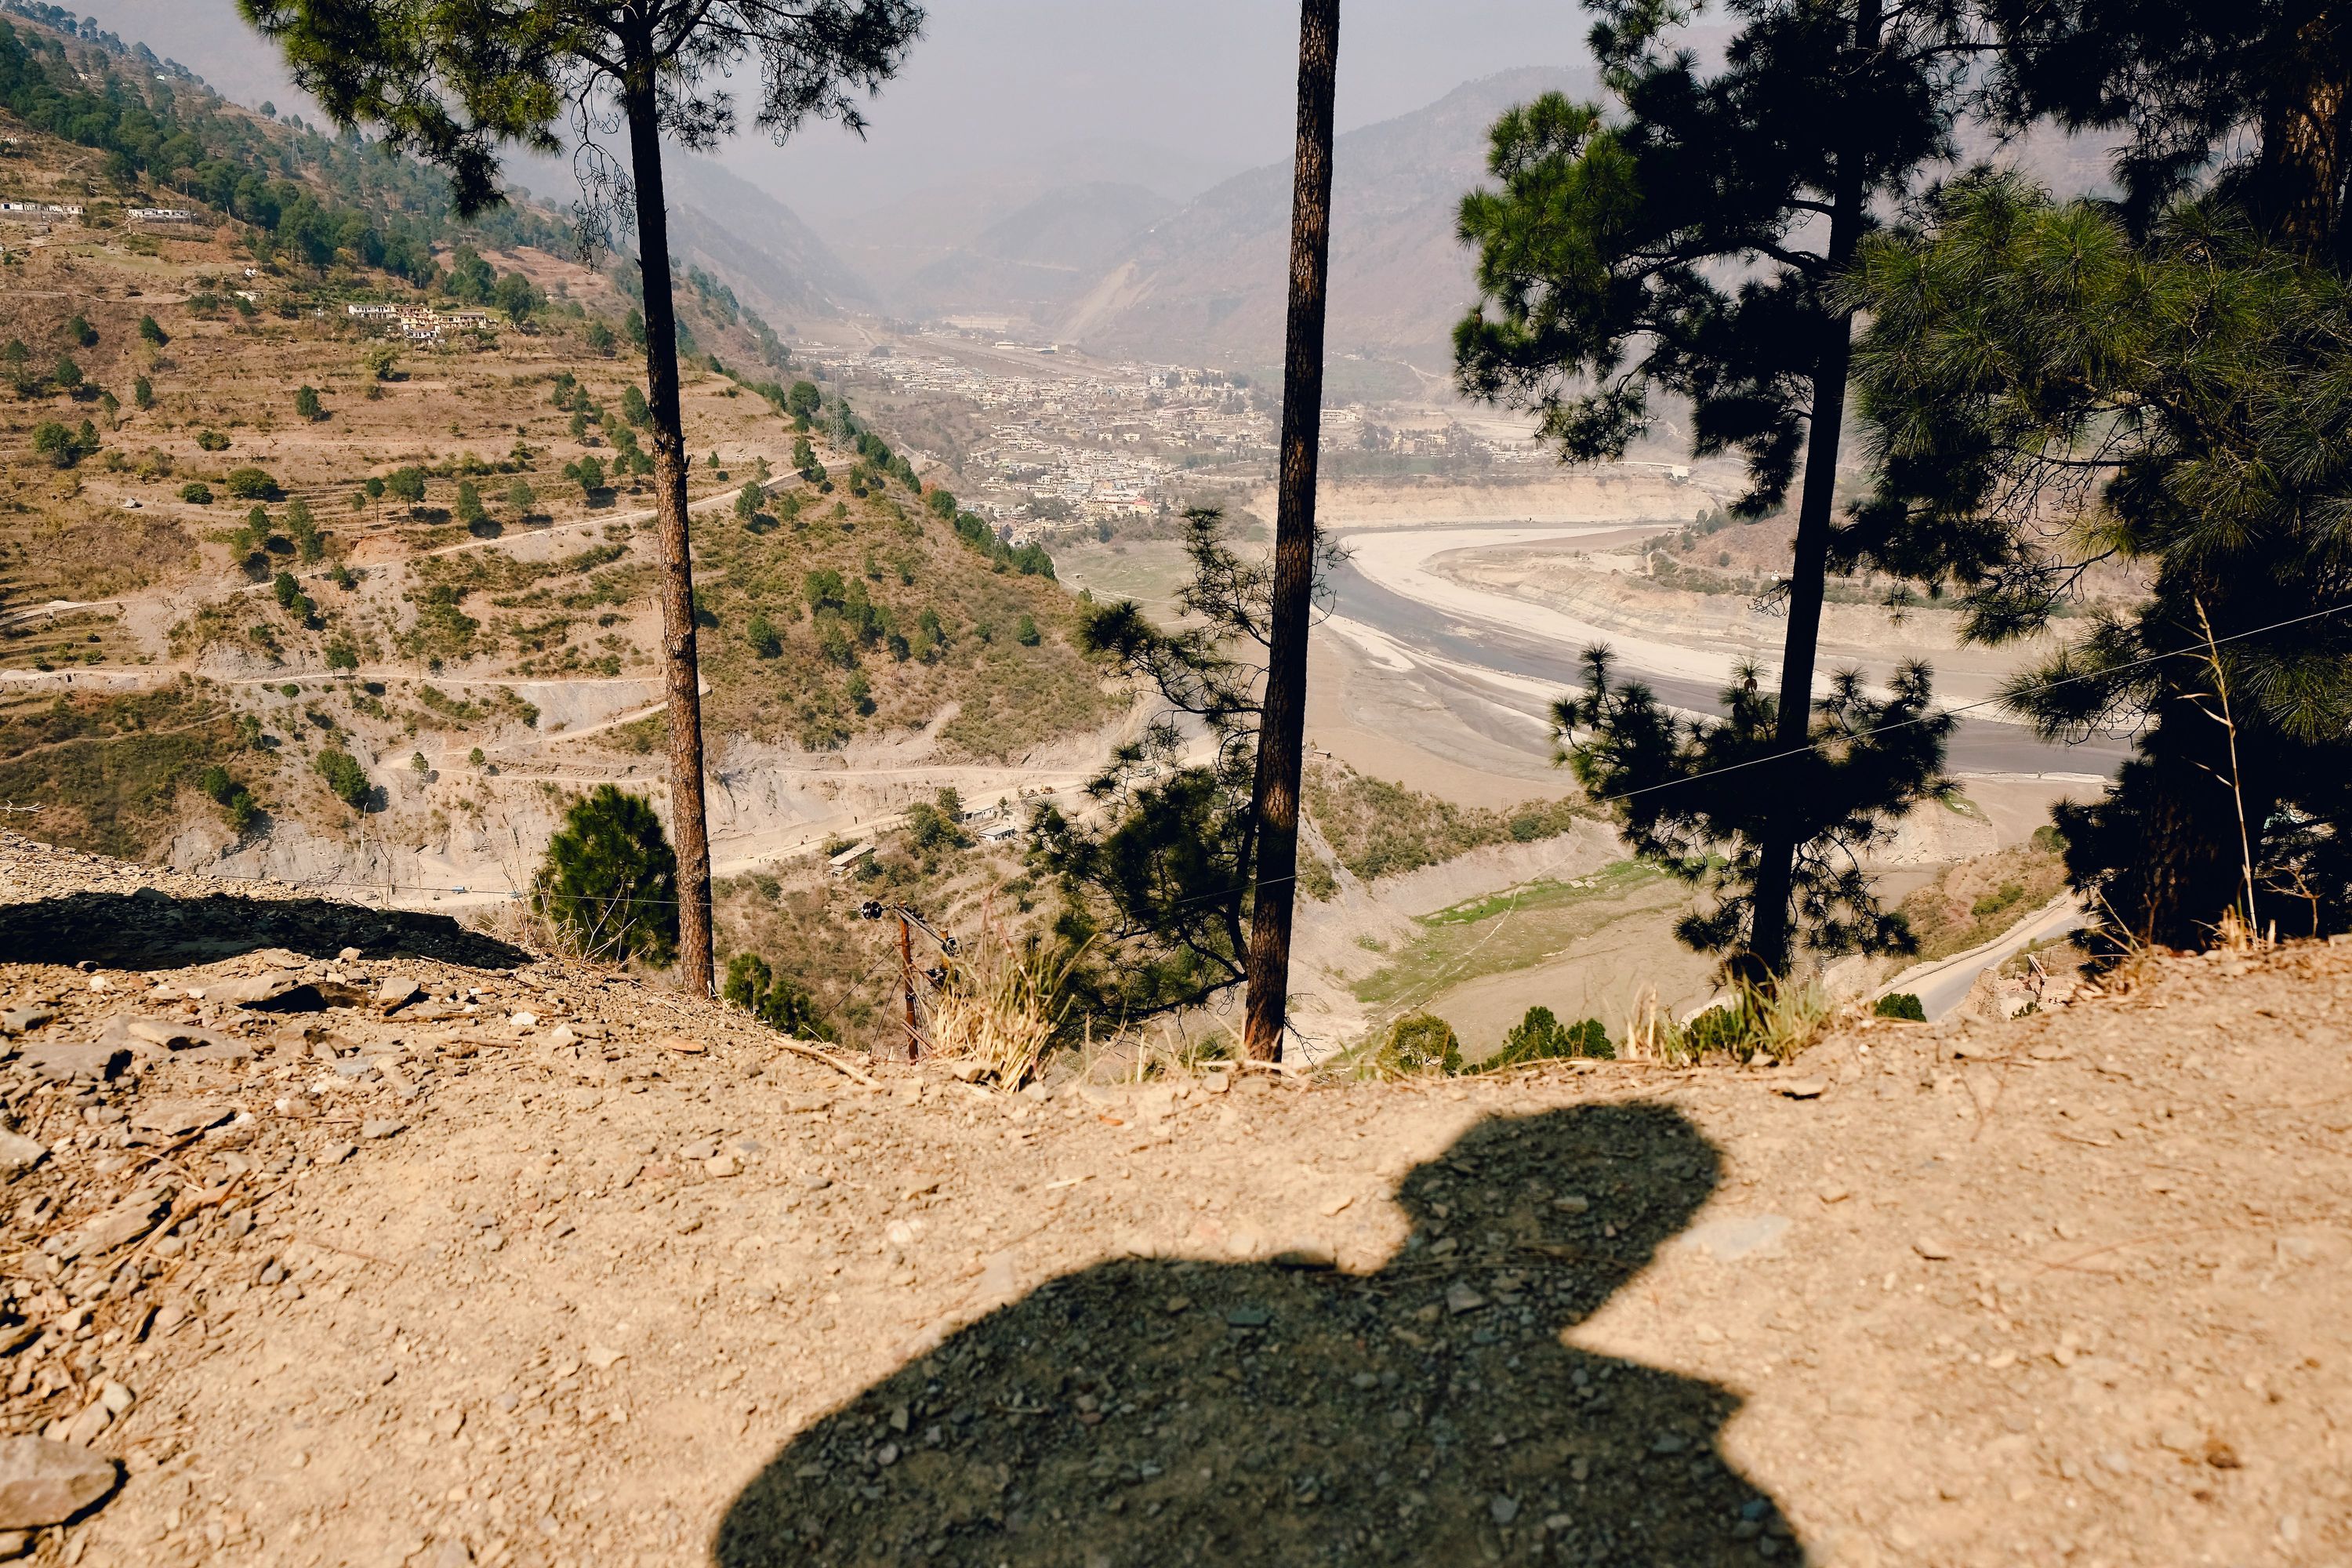 A selfie somewhere in Uttarakhand, India. February 2021.